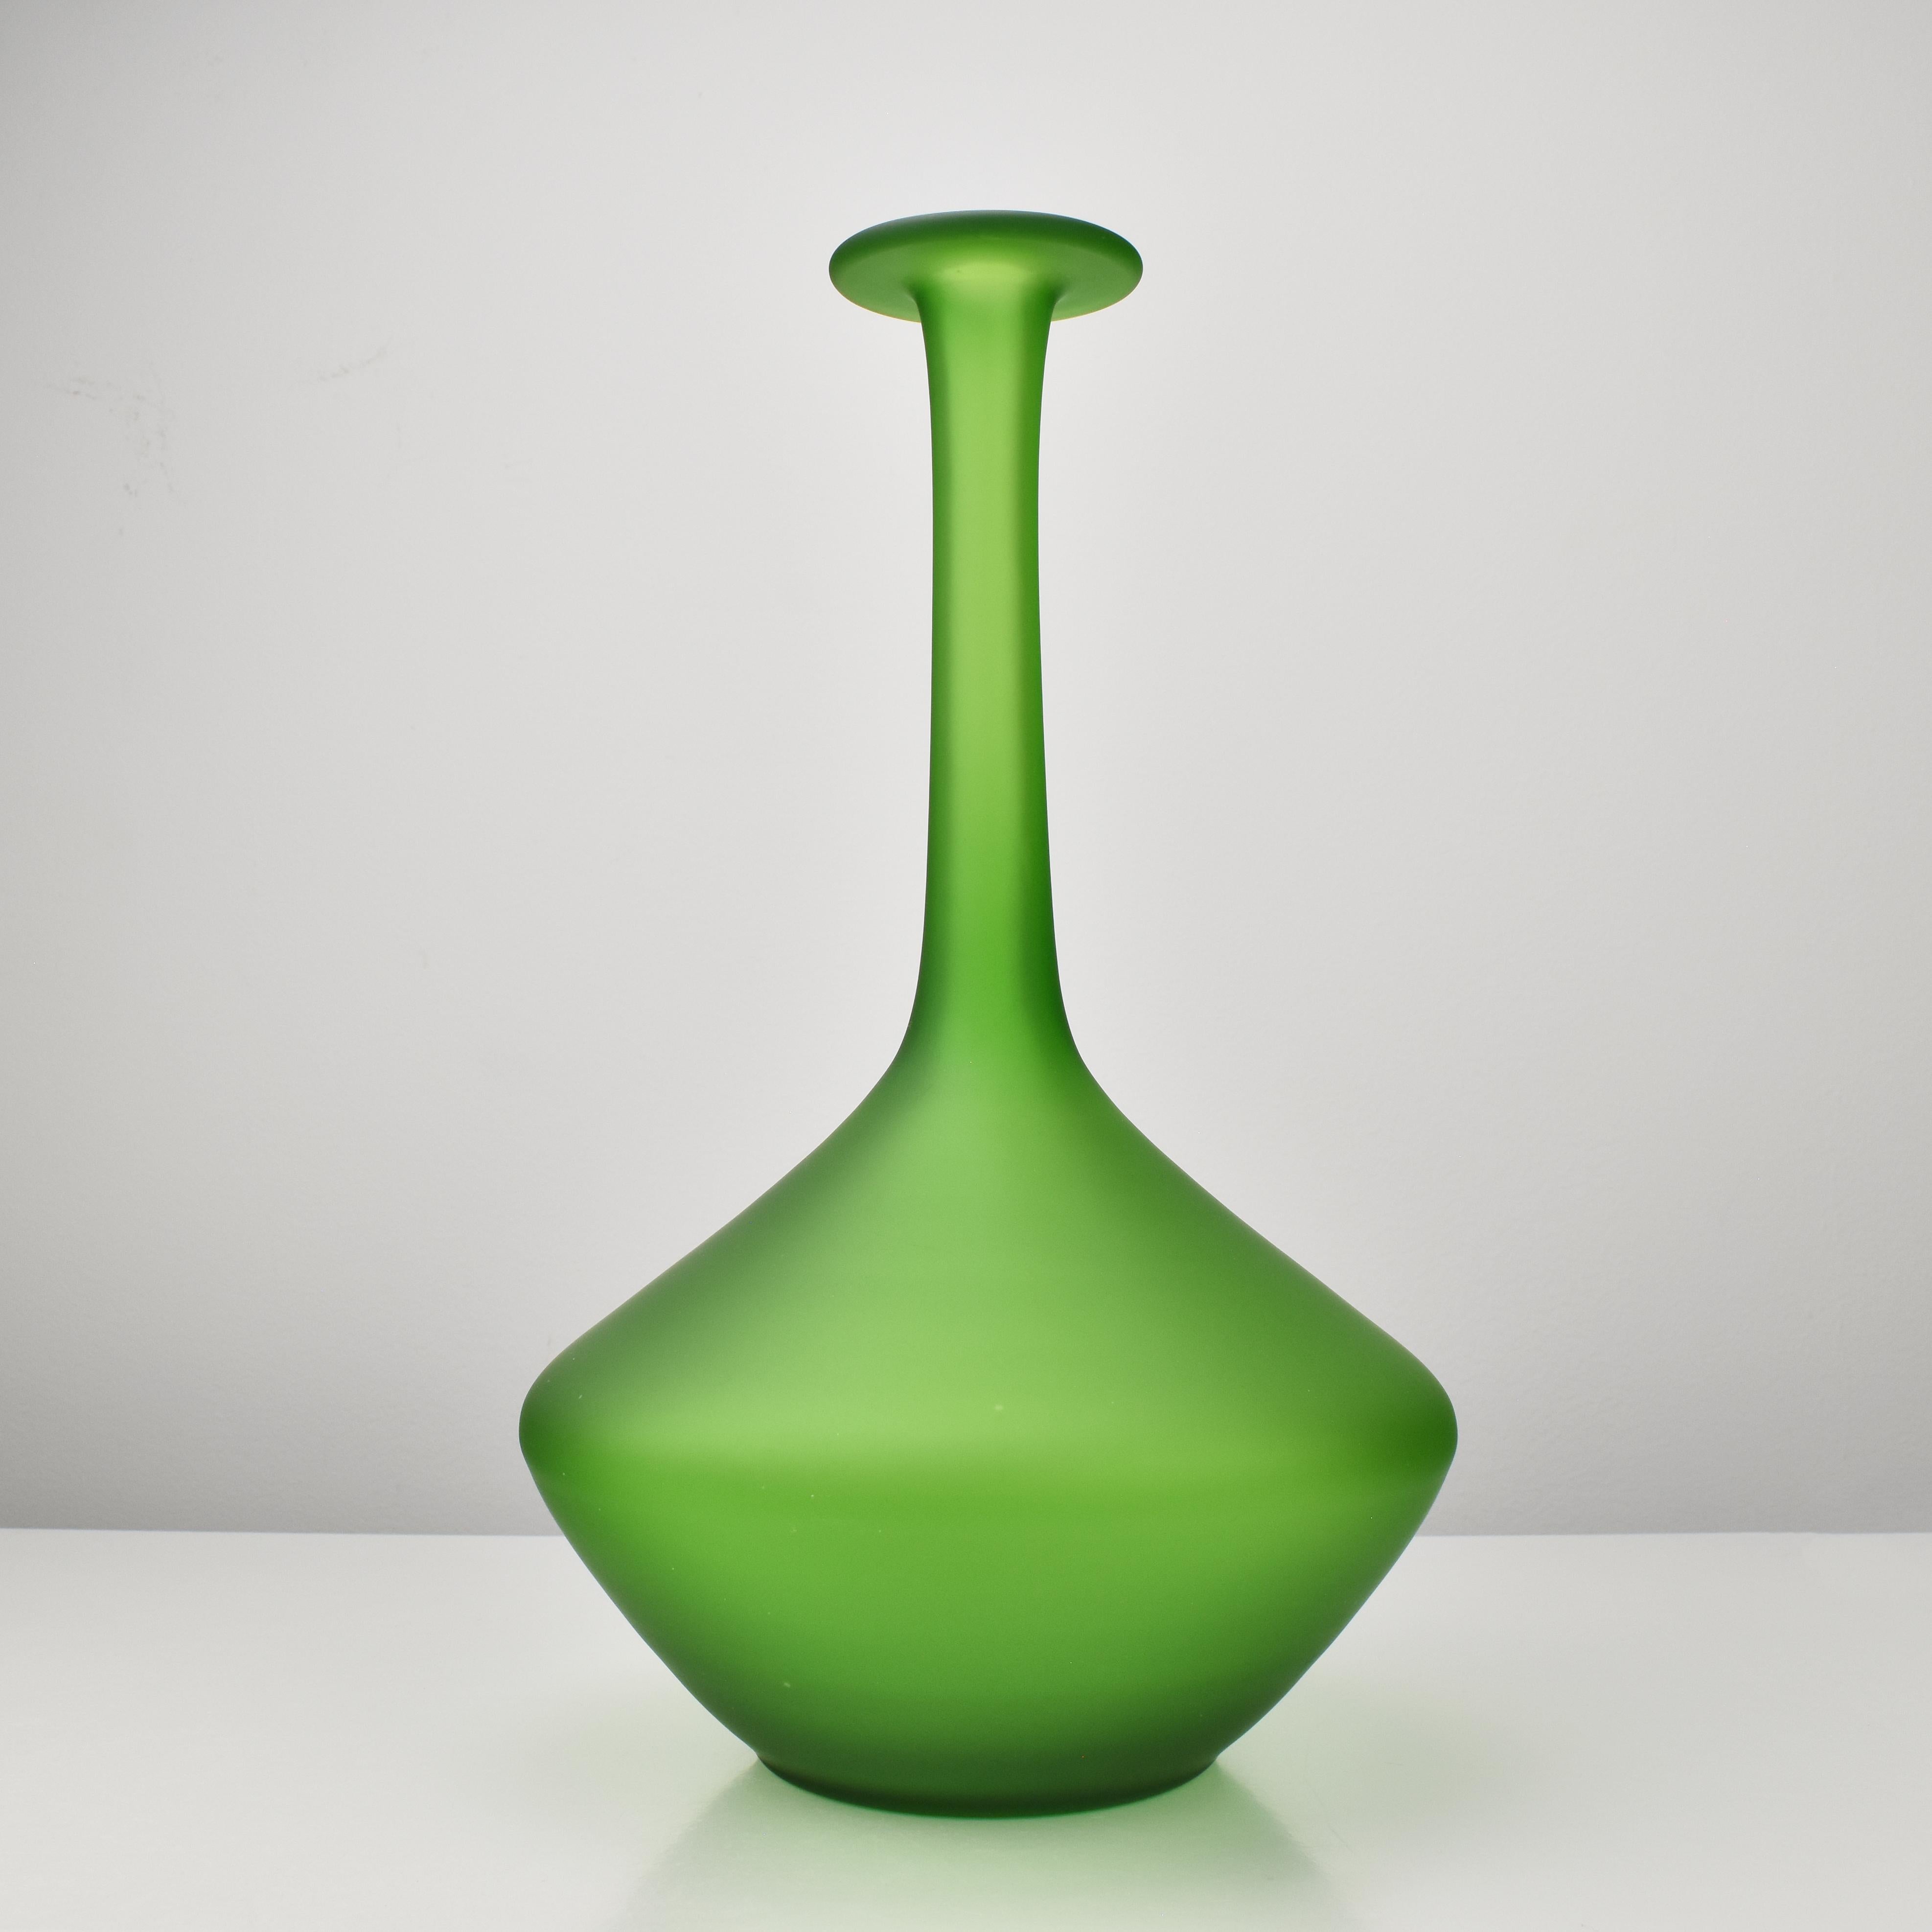 Vintage Carlo Moretti Langstielige Soliflores-Vase aus leuchtend grünem Kunstglas mit einer geätzten Oberfläche.

Ob allein oder mit einem einzelnen Stängel oder Zweig gefüllt, diese langstielige Soliflores-Vase von Carlo Moretti ist mit Sicherheit